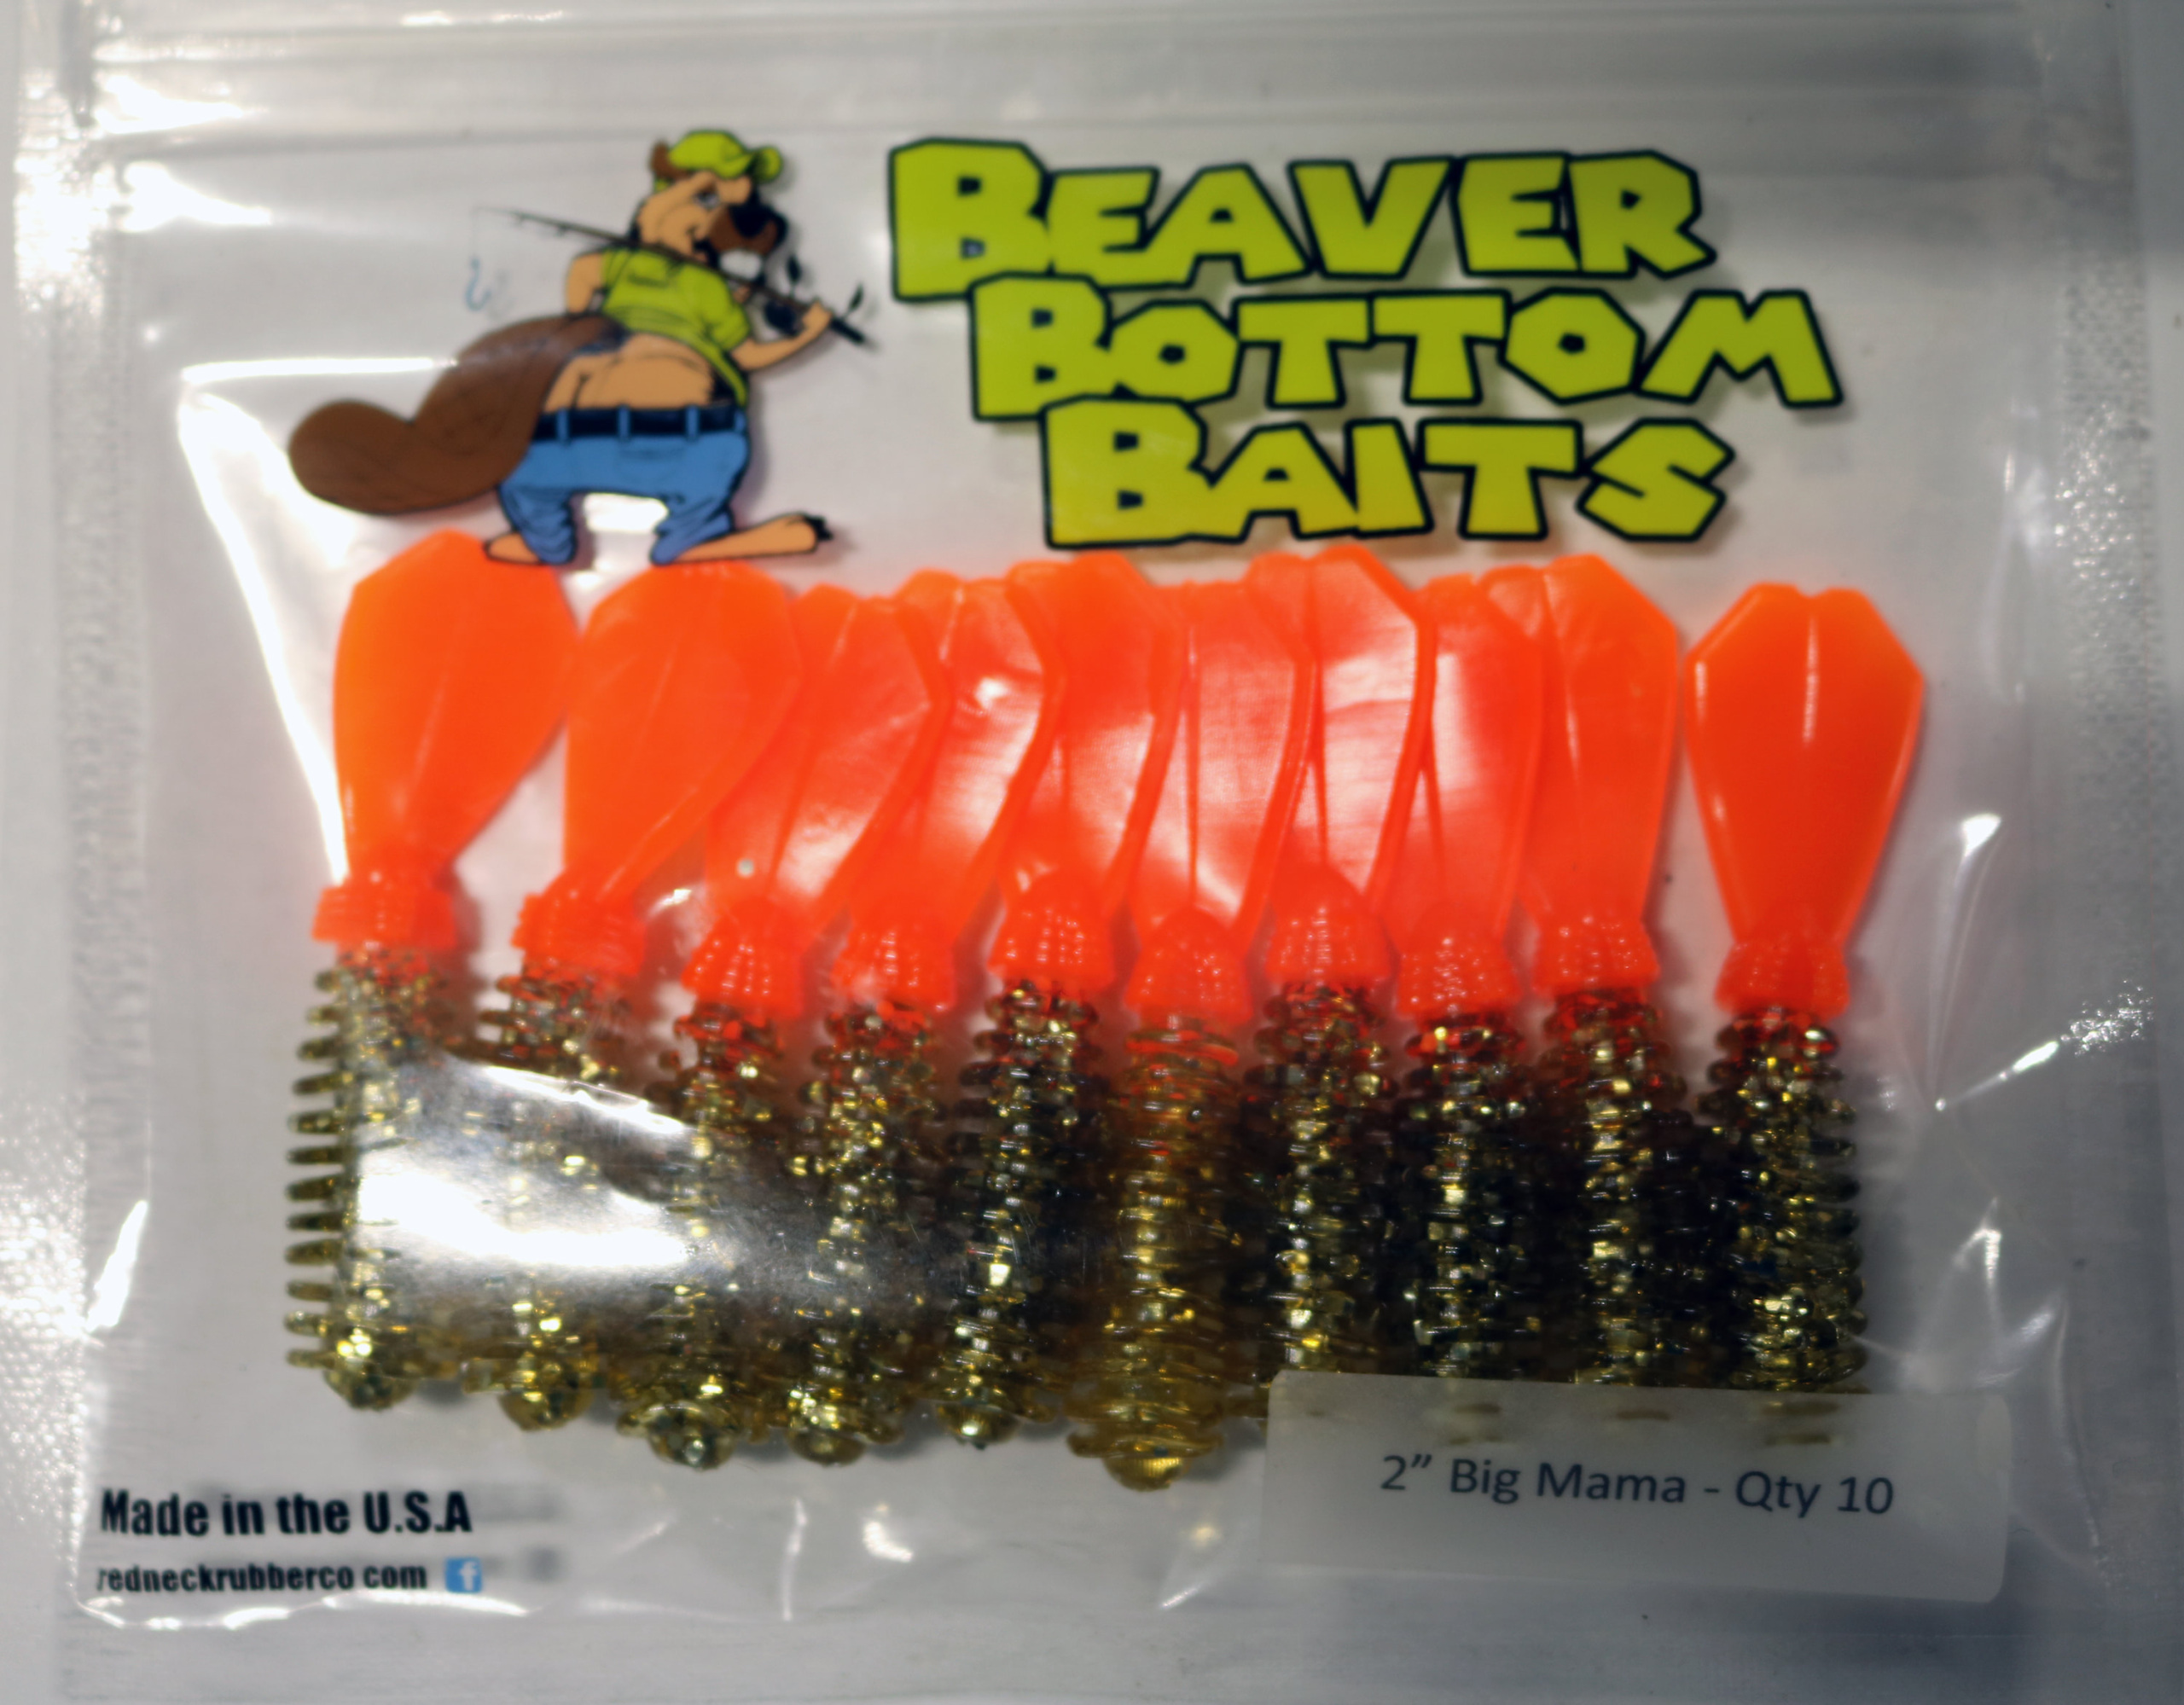 RR127 Beaver Bottom Big Mama